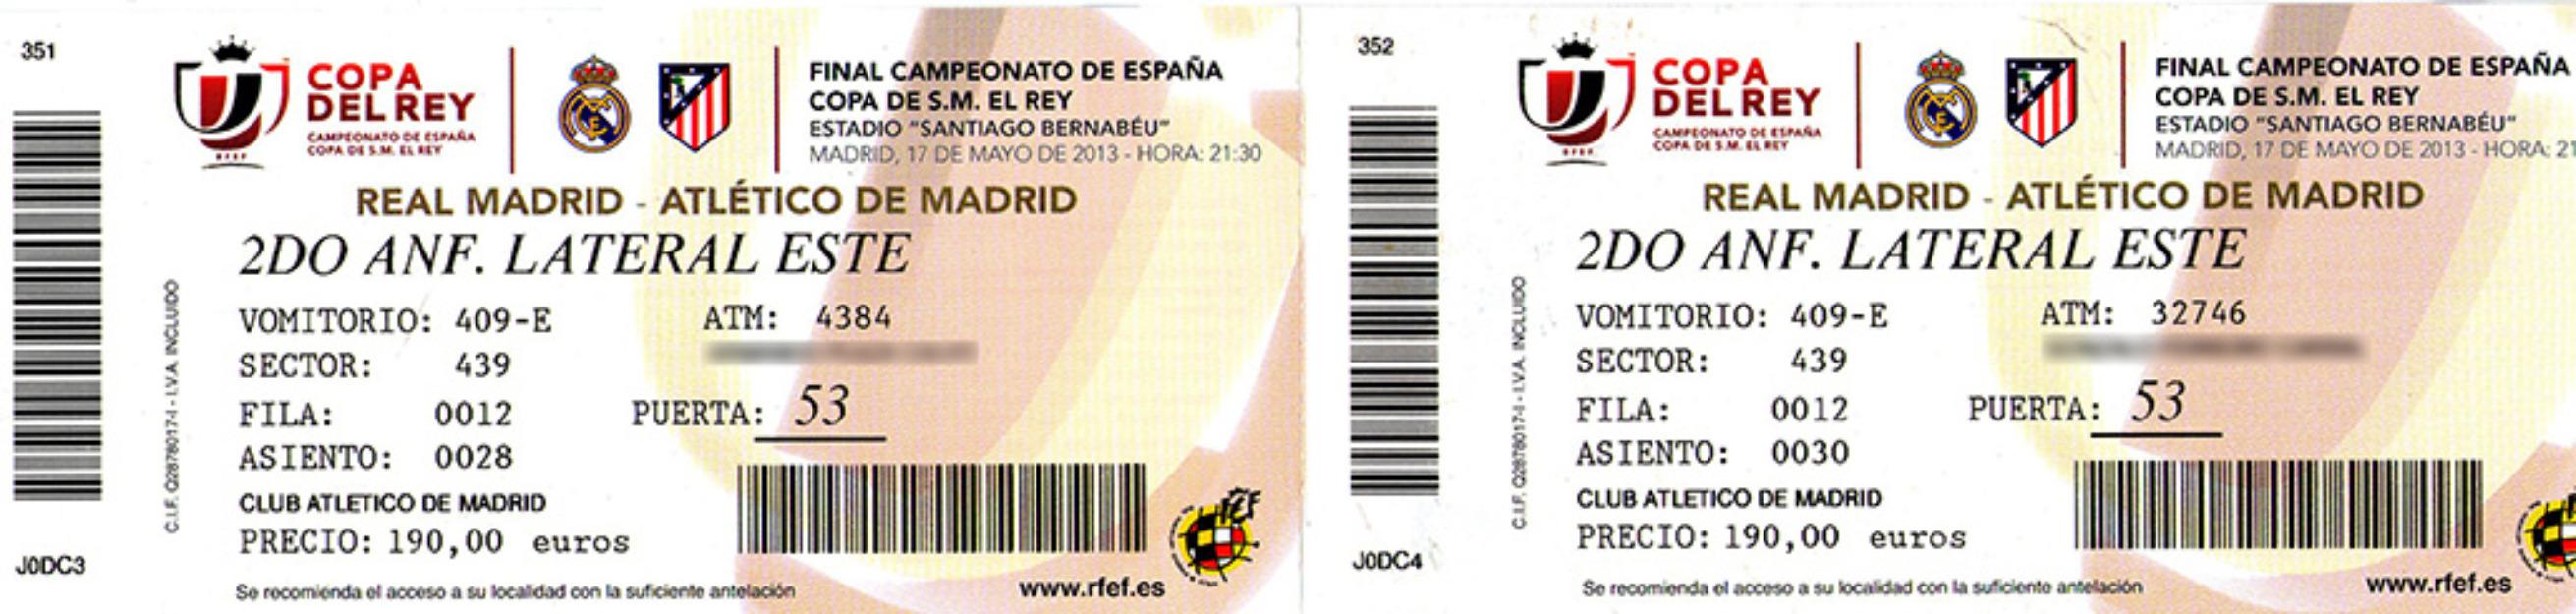 Vendo boli bic y cedo 2 entradas juntas Final Copa del Rey Real Madrid-Atlético de Madrid